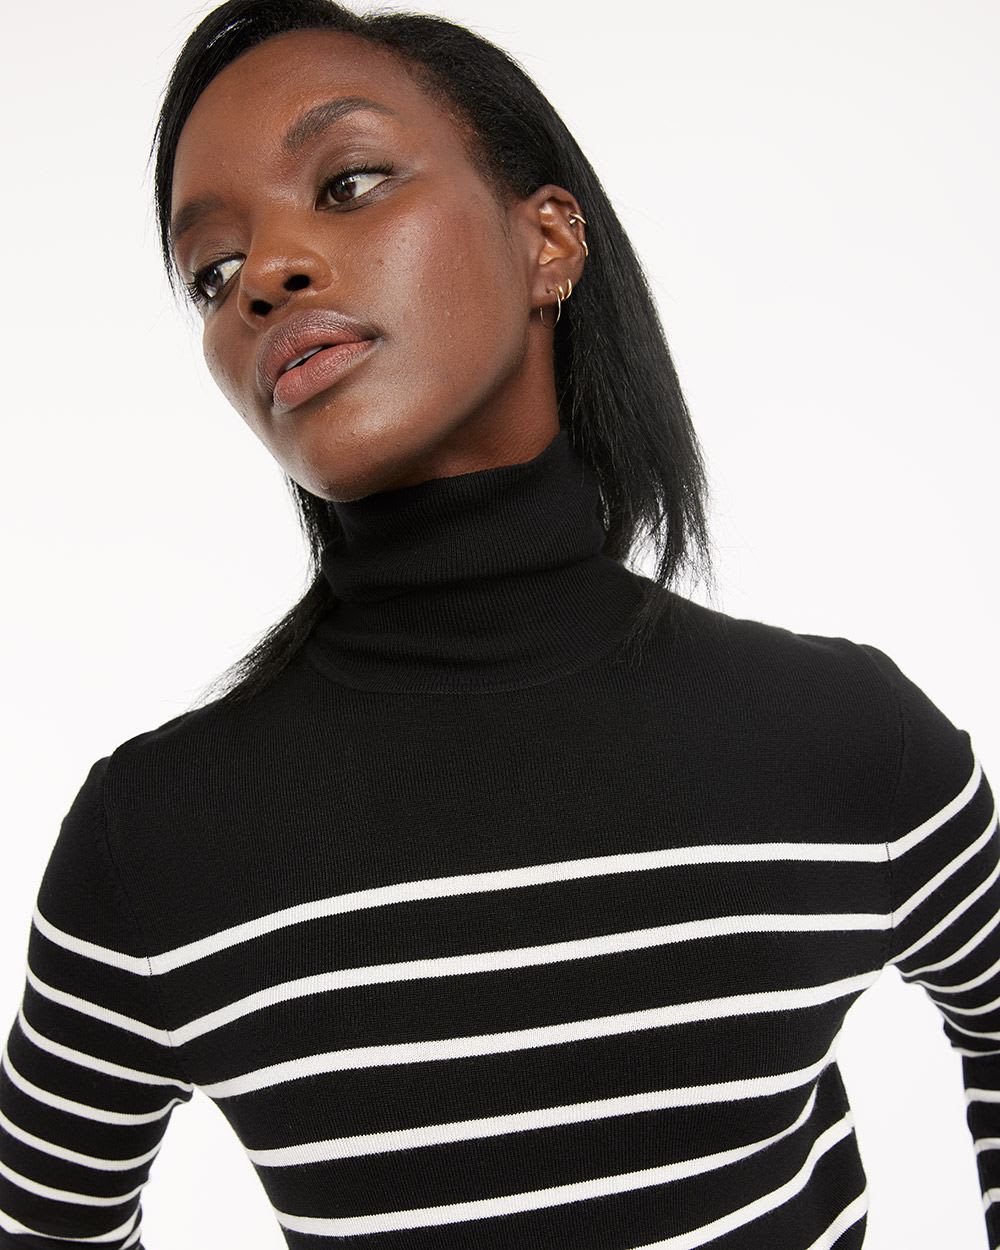 Striped Turtleneck Sweater, R Essentials